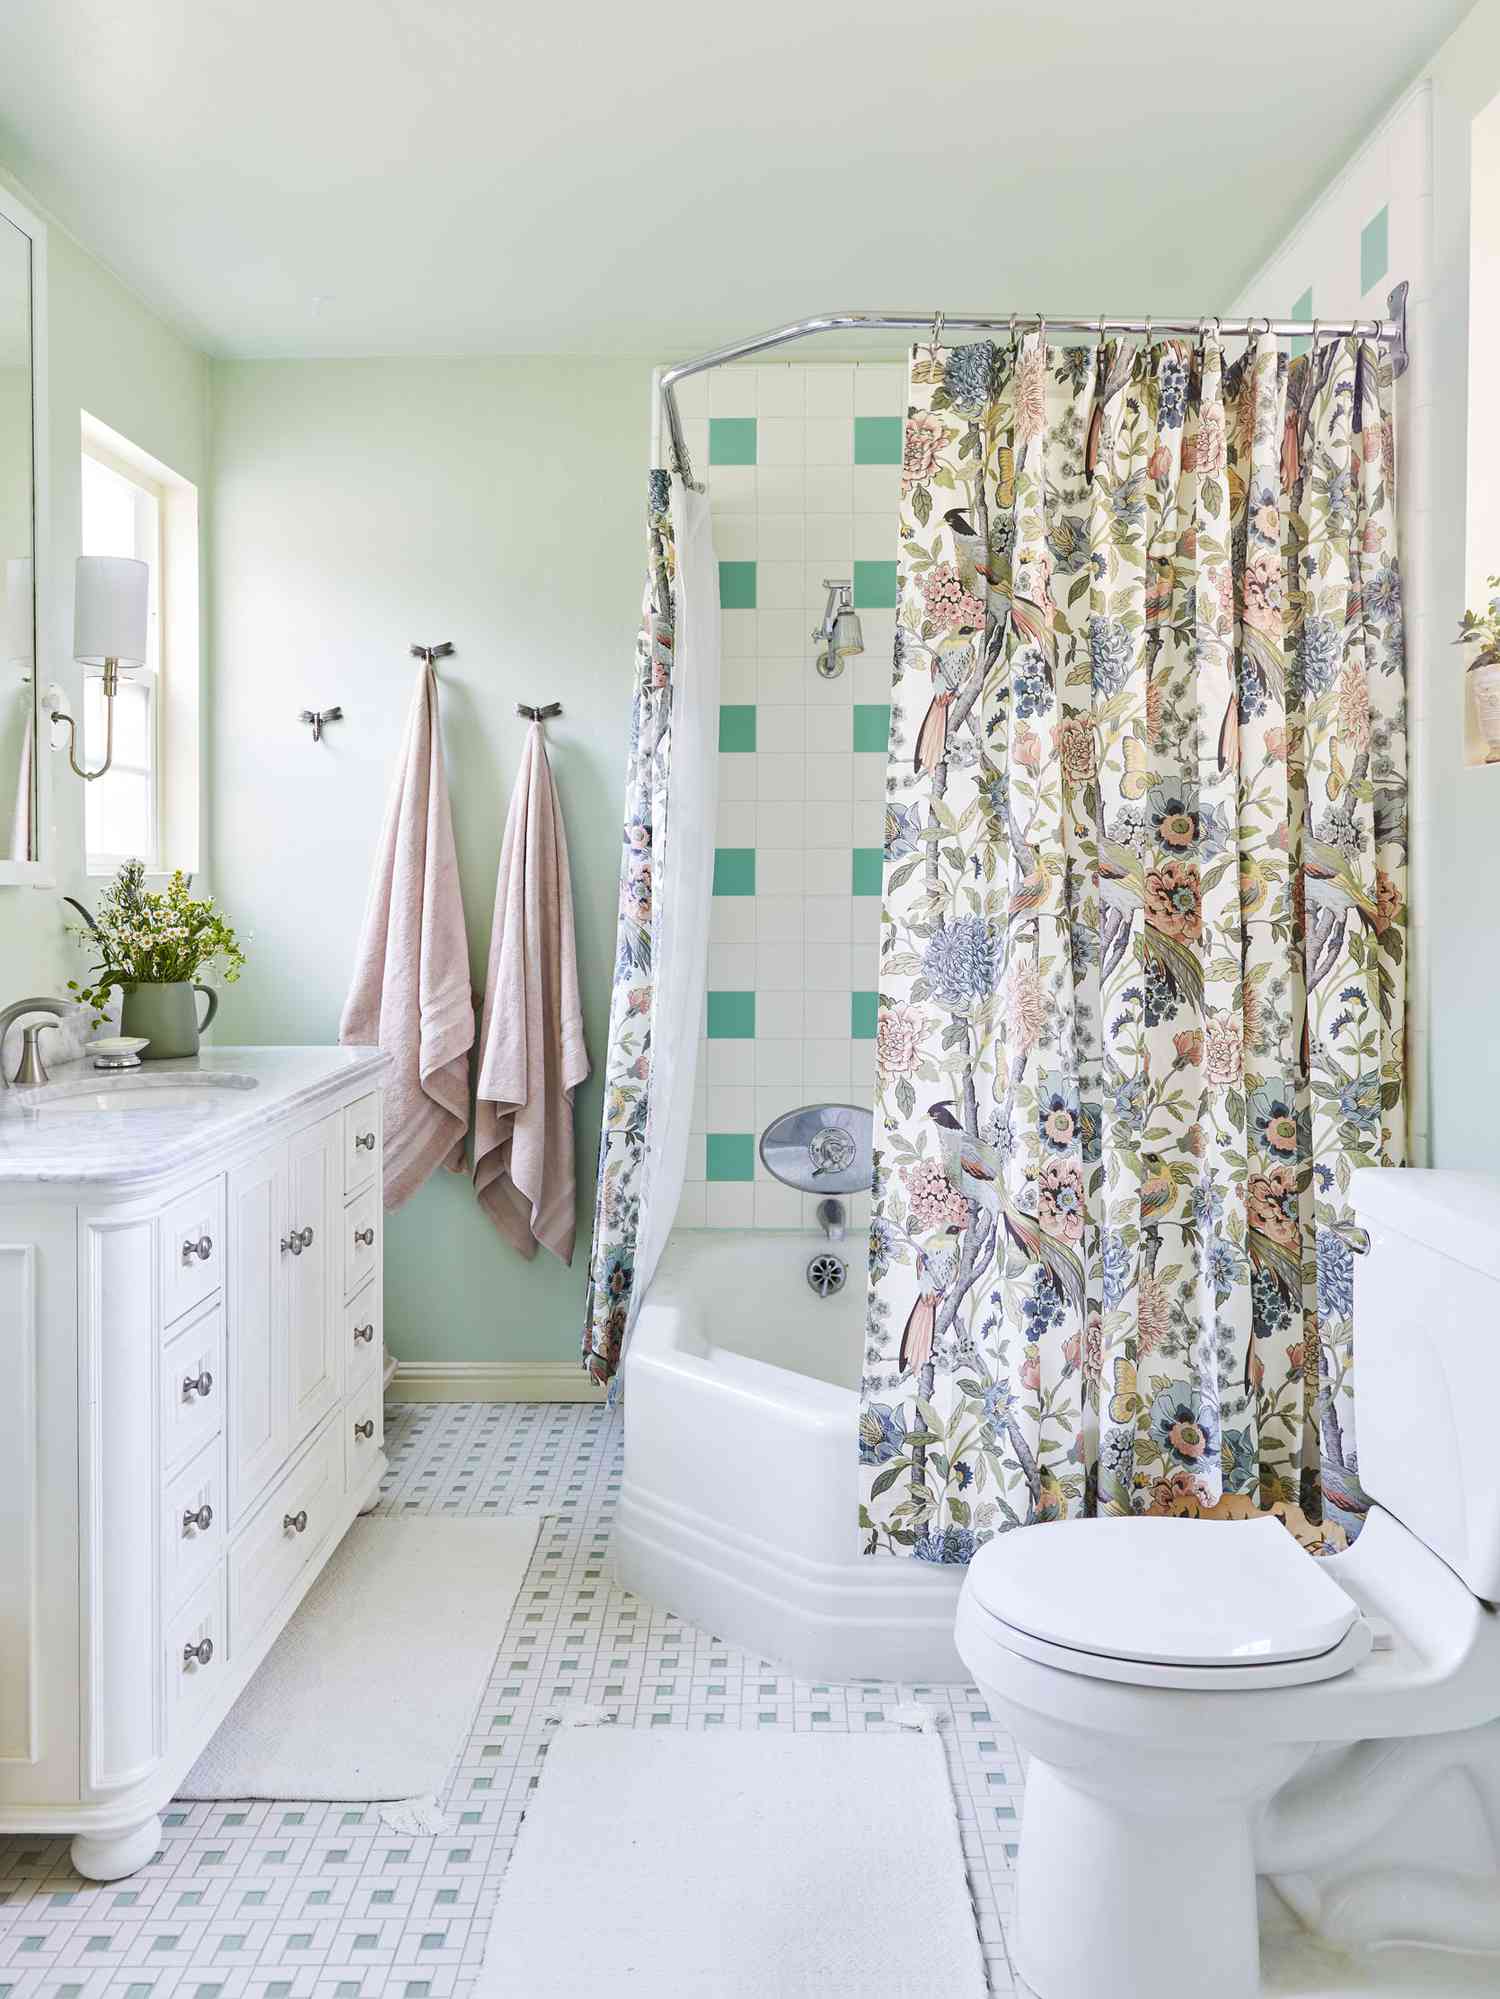 Bunter Duschvorhang mit floralem Muster passt zu den in gedeckten Grüntönen gestrichenen Wänden